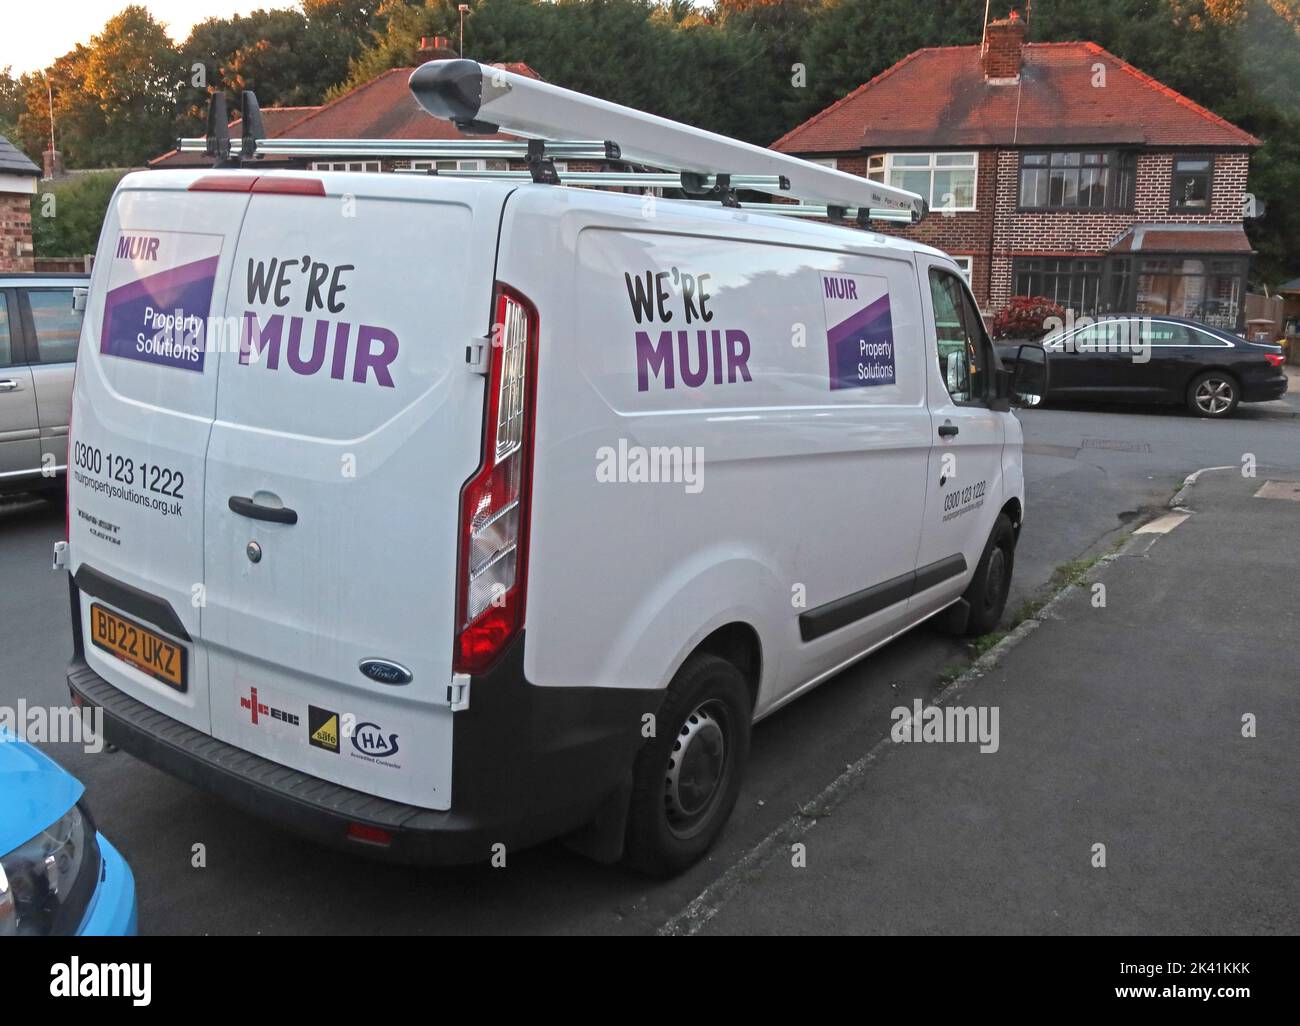 Muir répare-van, Warrington, Cheshire, Angleterre, Royaume-Uni, WA4 Banque D'Images